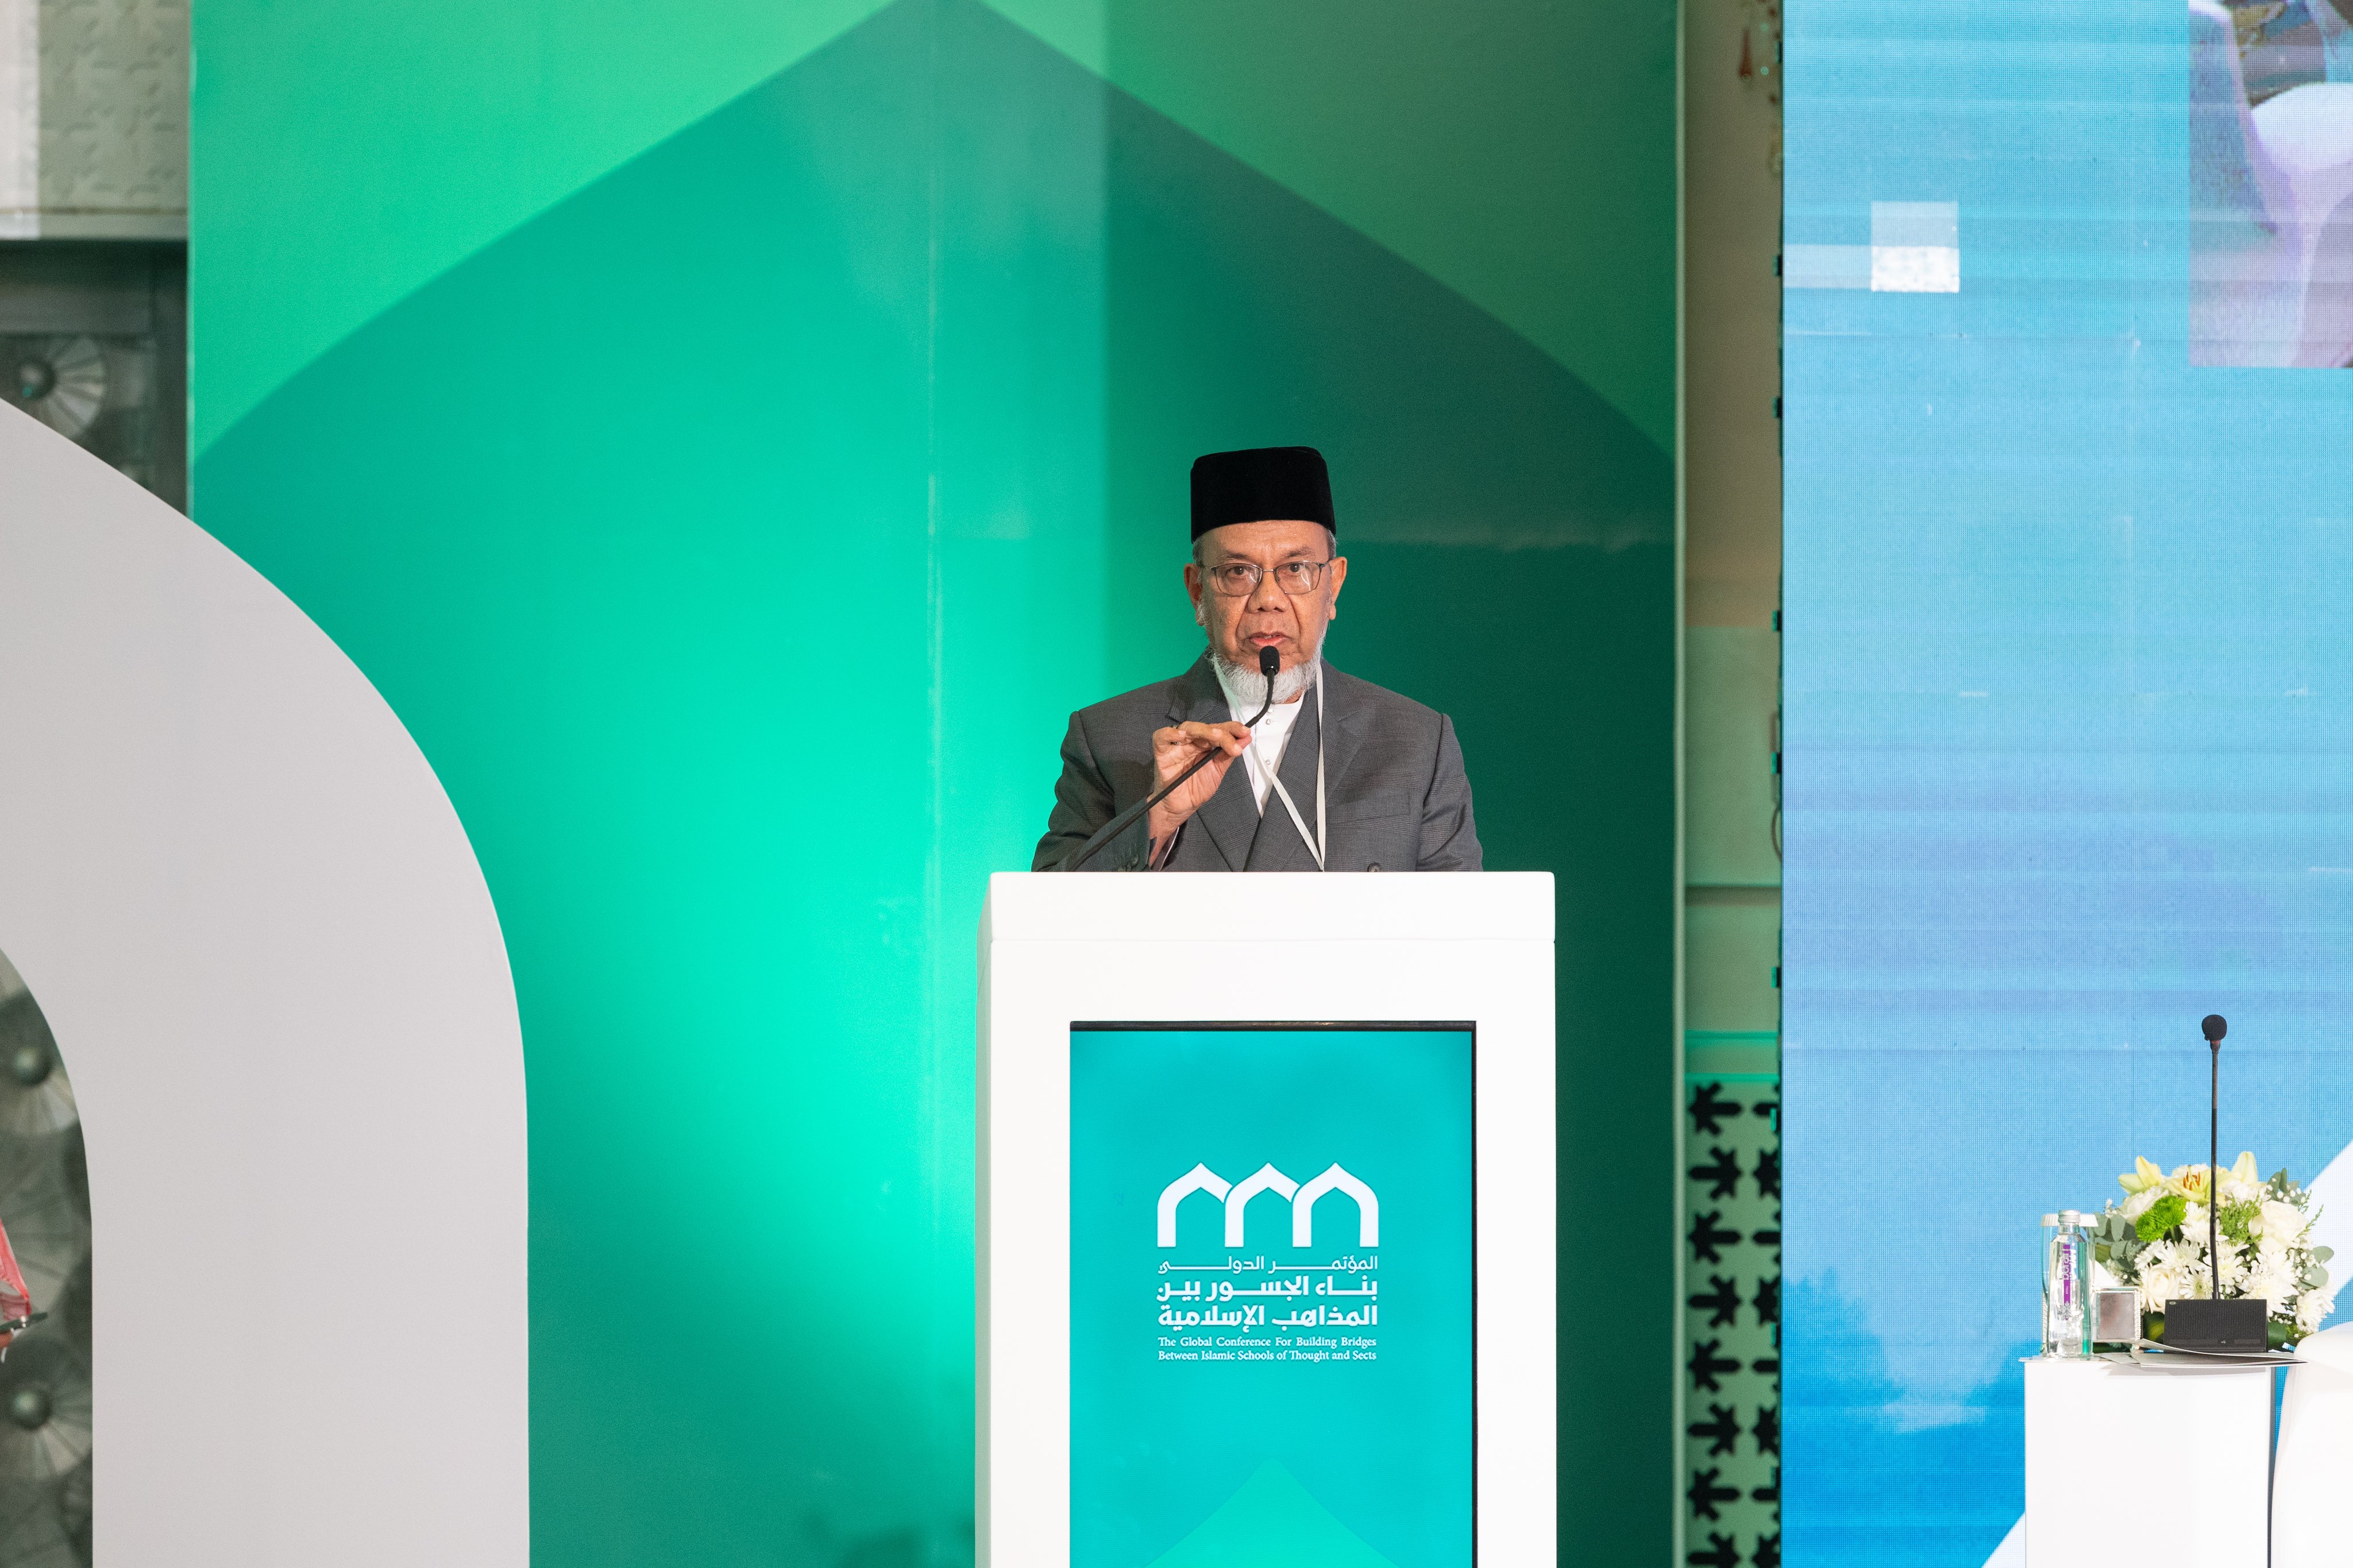 Le Président de l'Association des savants malaisiens, cheikh Wan Mohammed ben Abdulaziz, lors de la séance d'ouverture de la conférence : « Construire des ponts entre les écoles islamiques » :